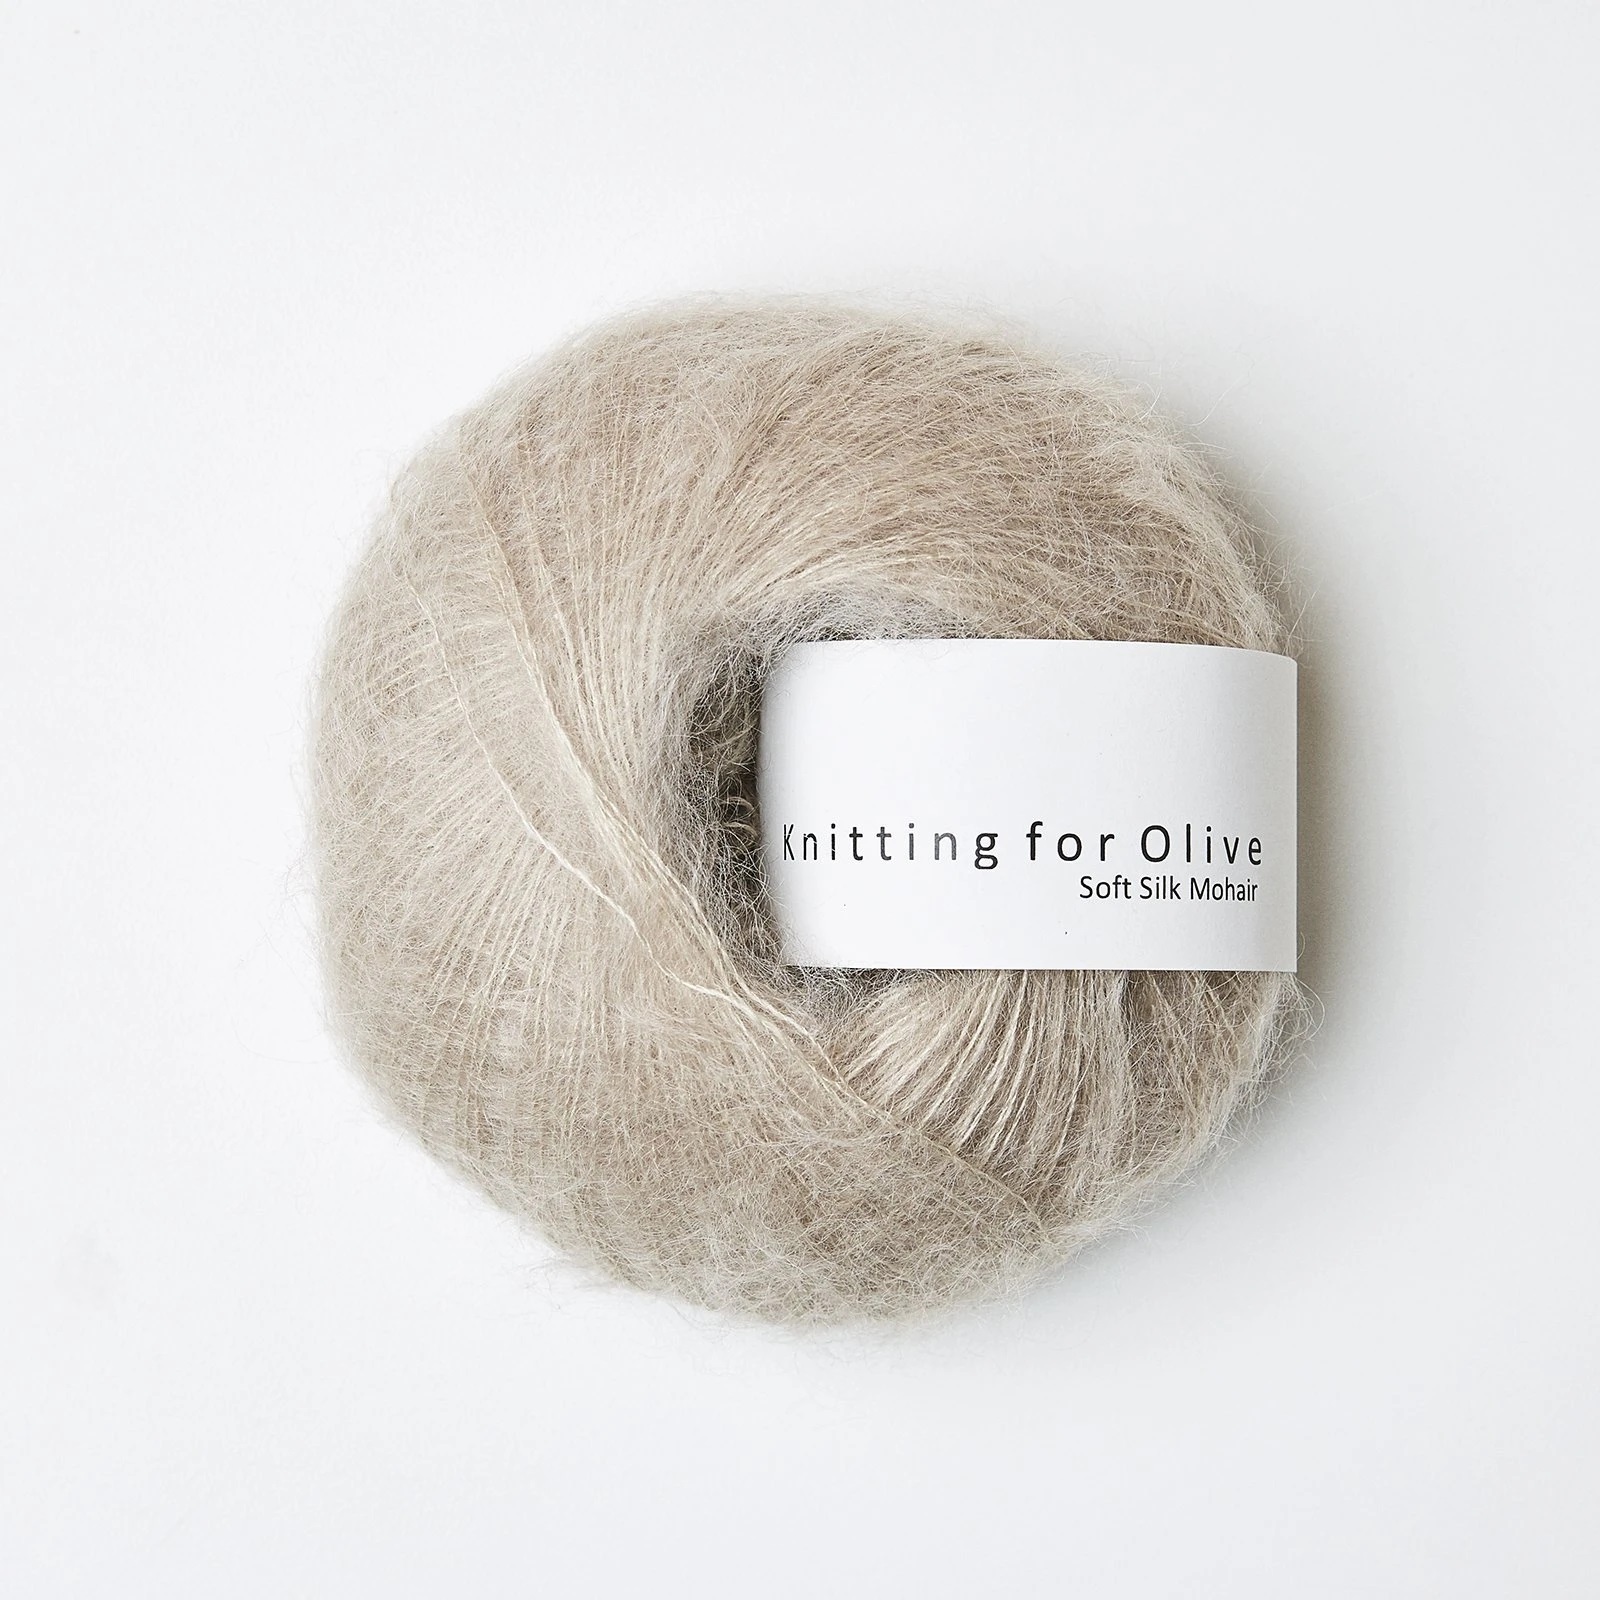 Knitting_for_olive_Soft_Silk_Mohair_havre